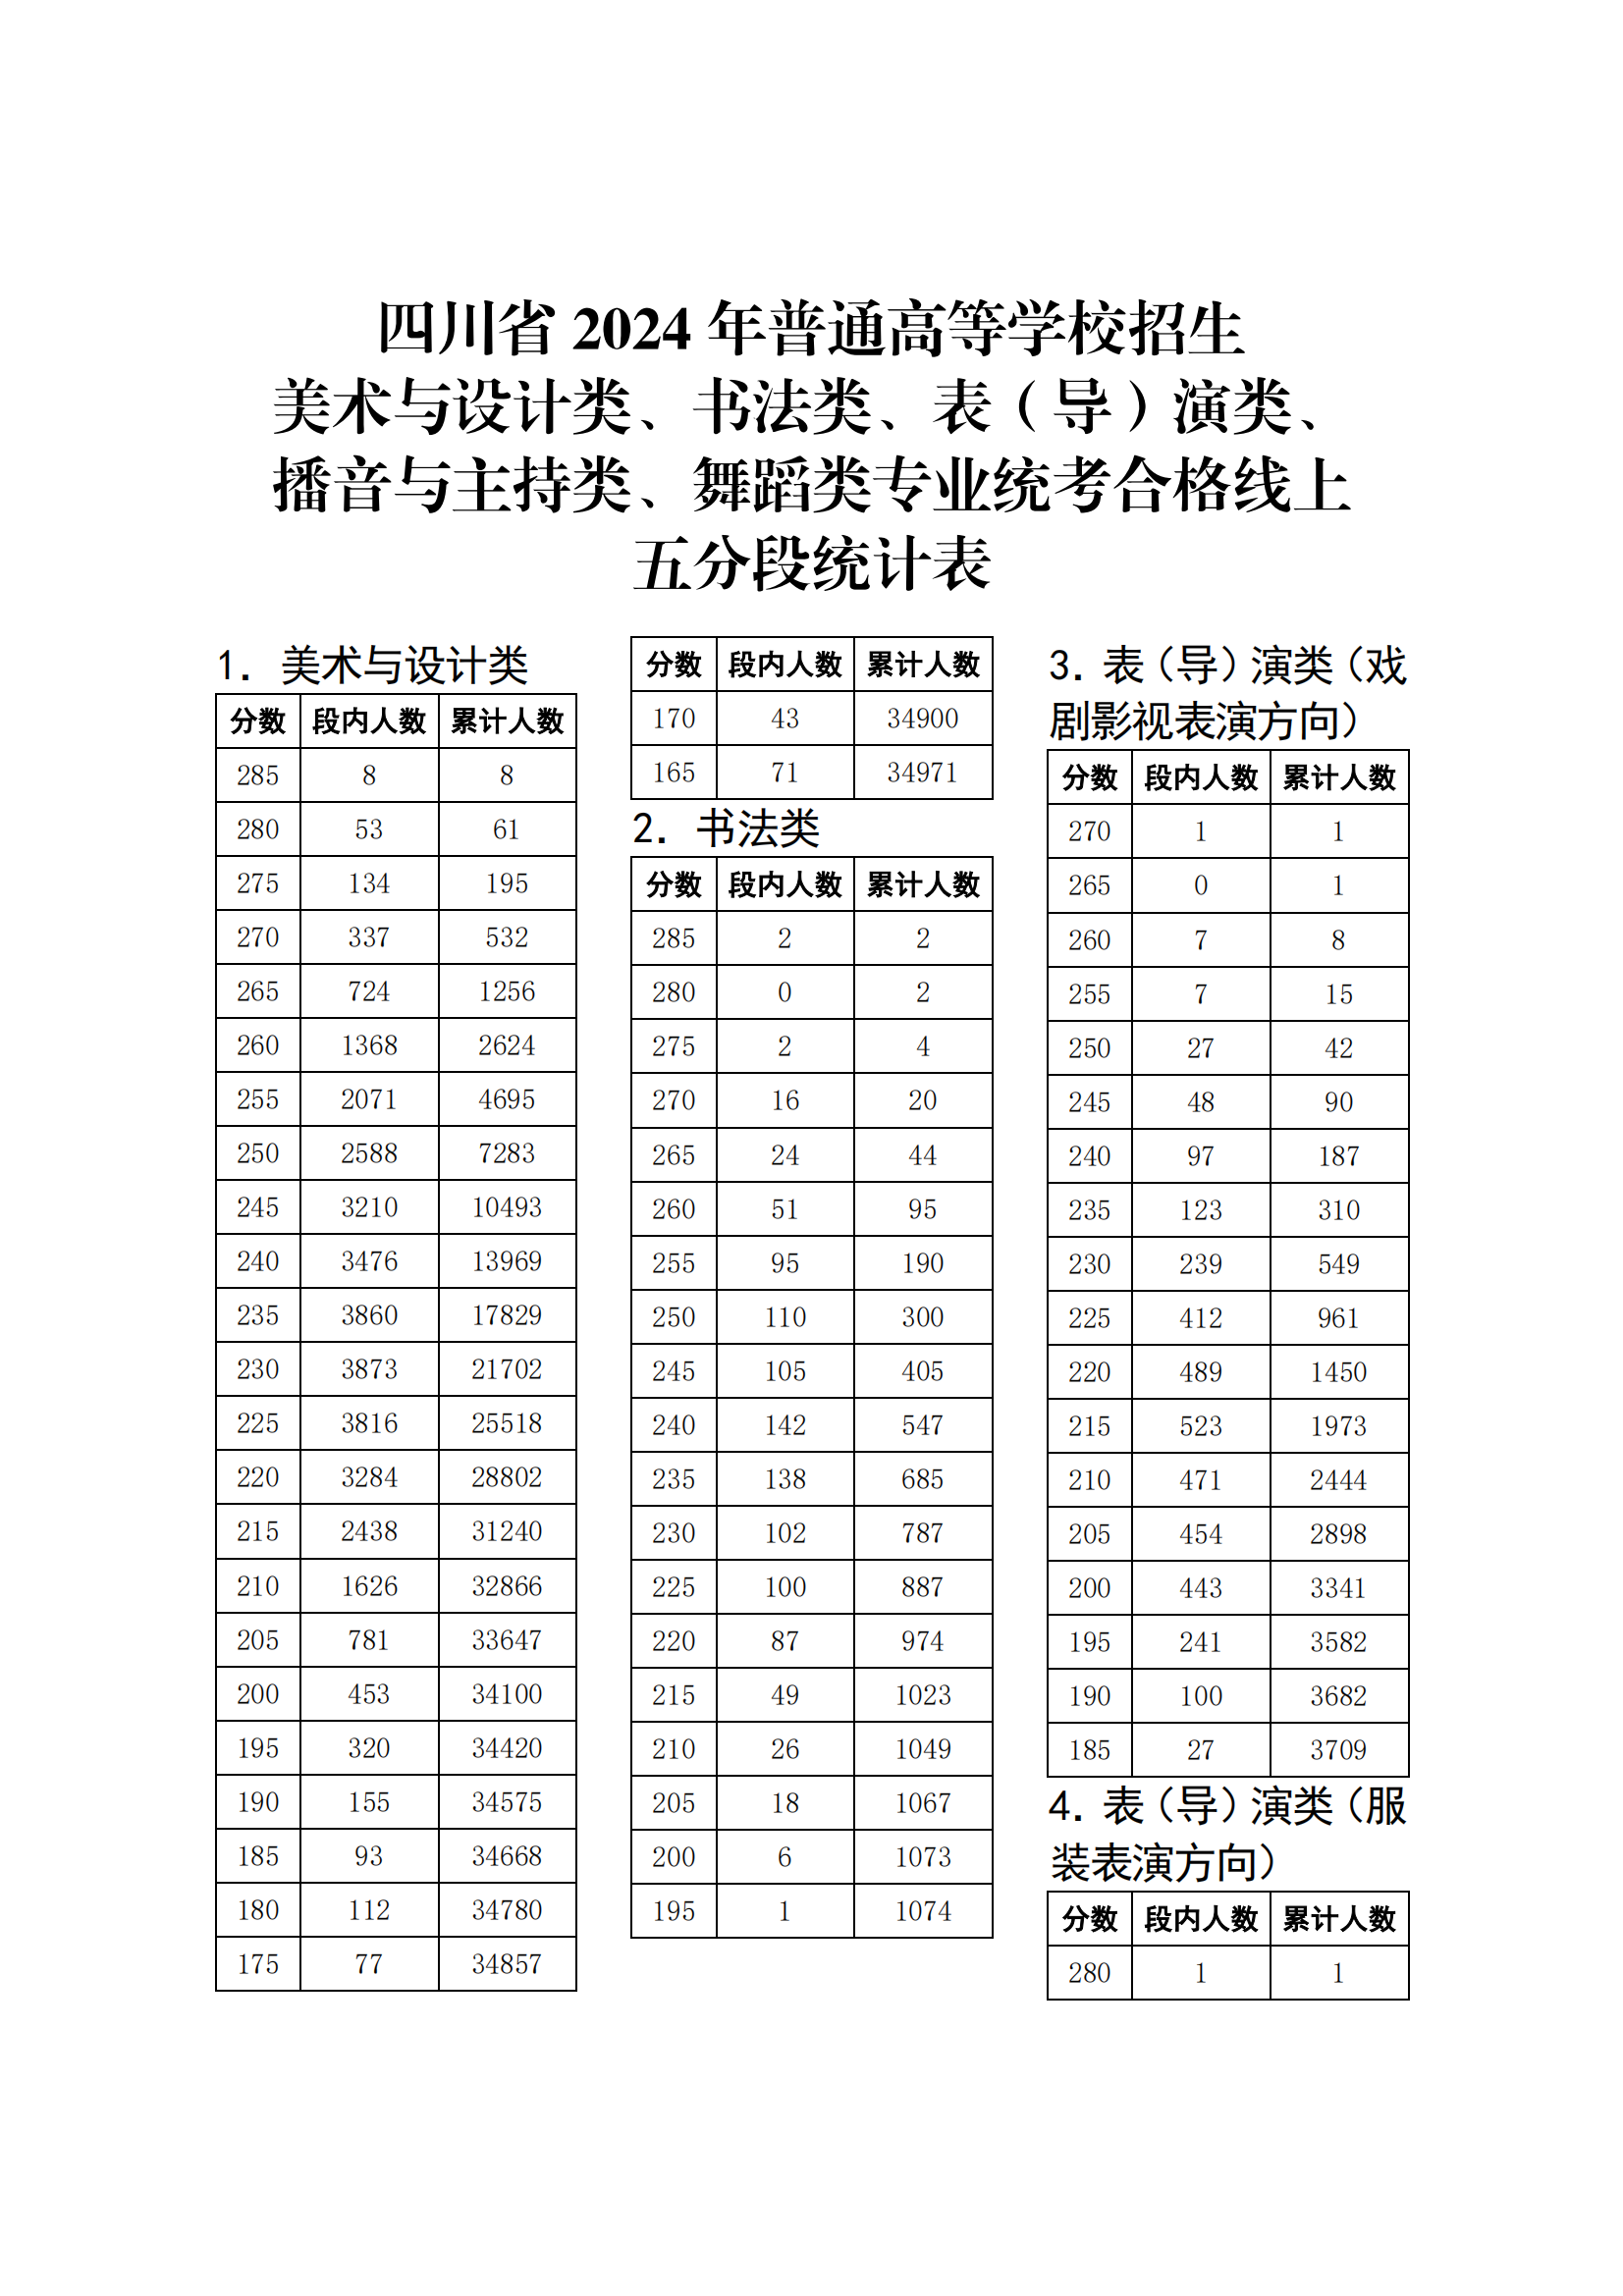 四川2024艺术类专业统考合格线上 五分段统计表公布